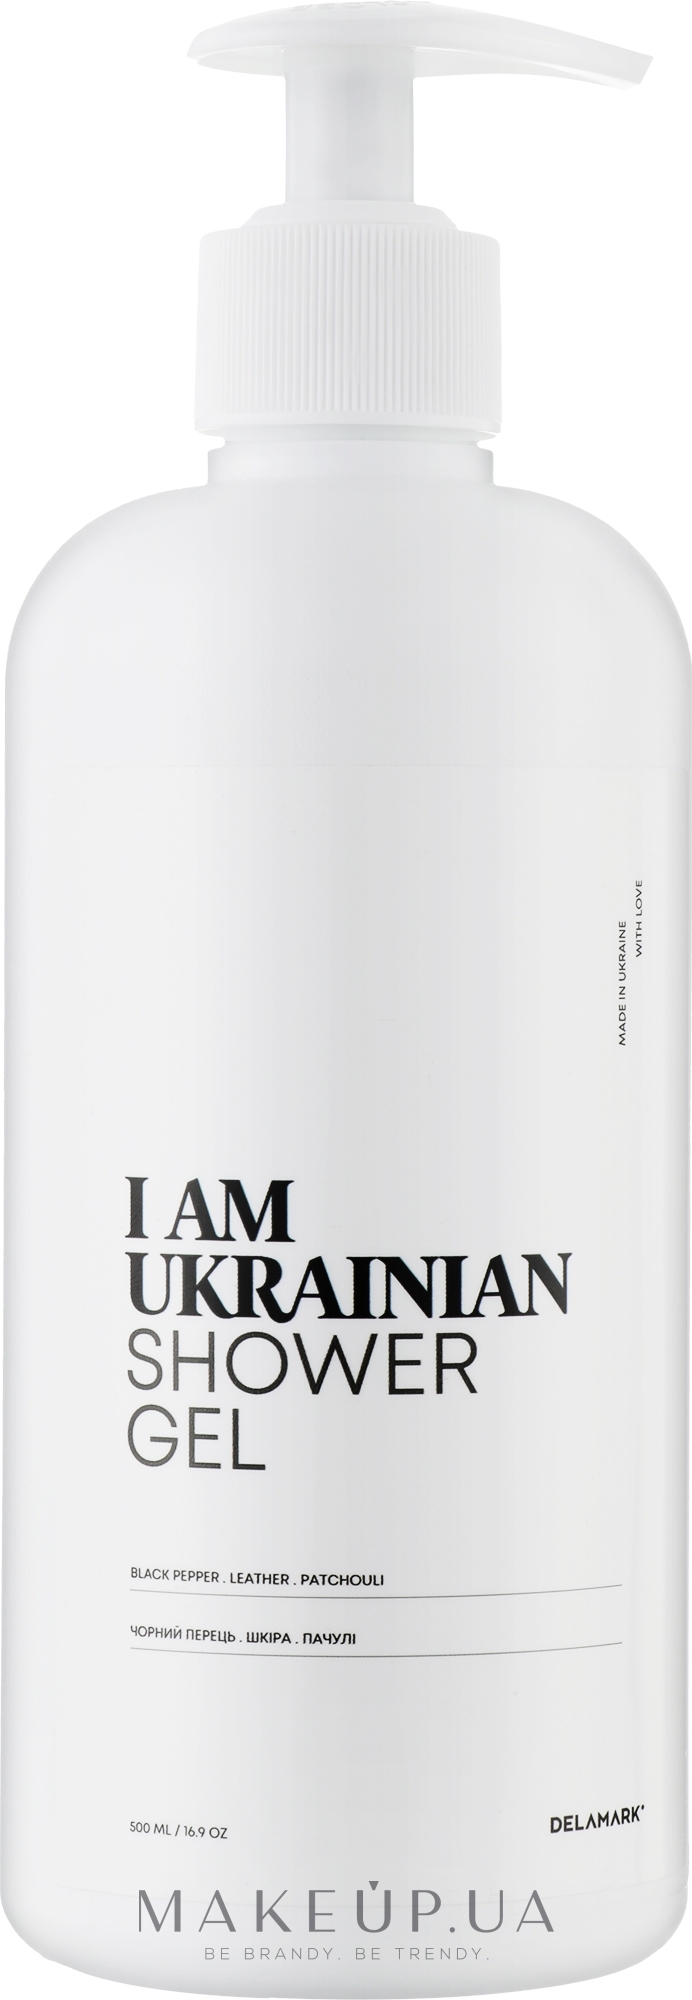 Гель для душа с ароматом черного перца, кожи, пачули - I Am Ukrainian Shower Gel — фото 500ml